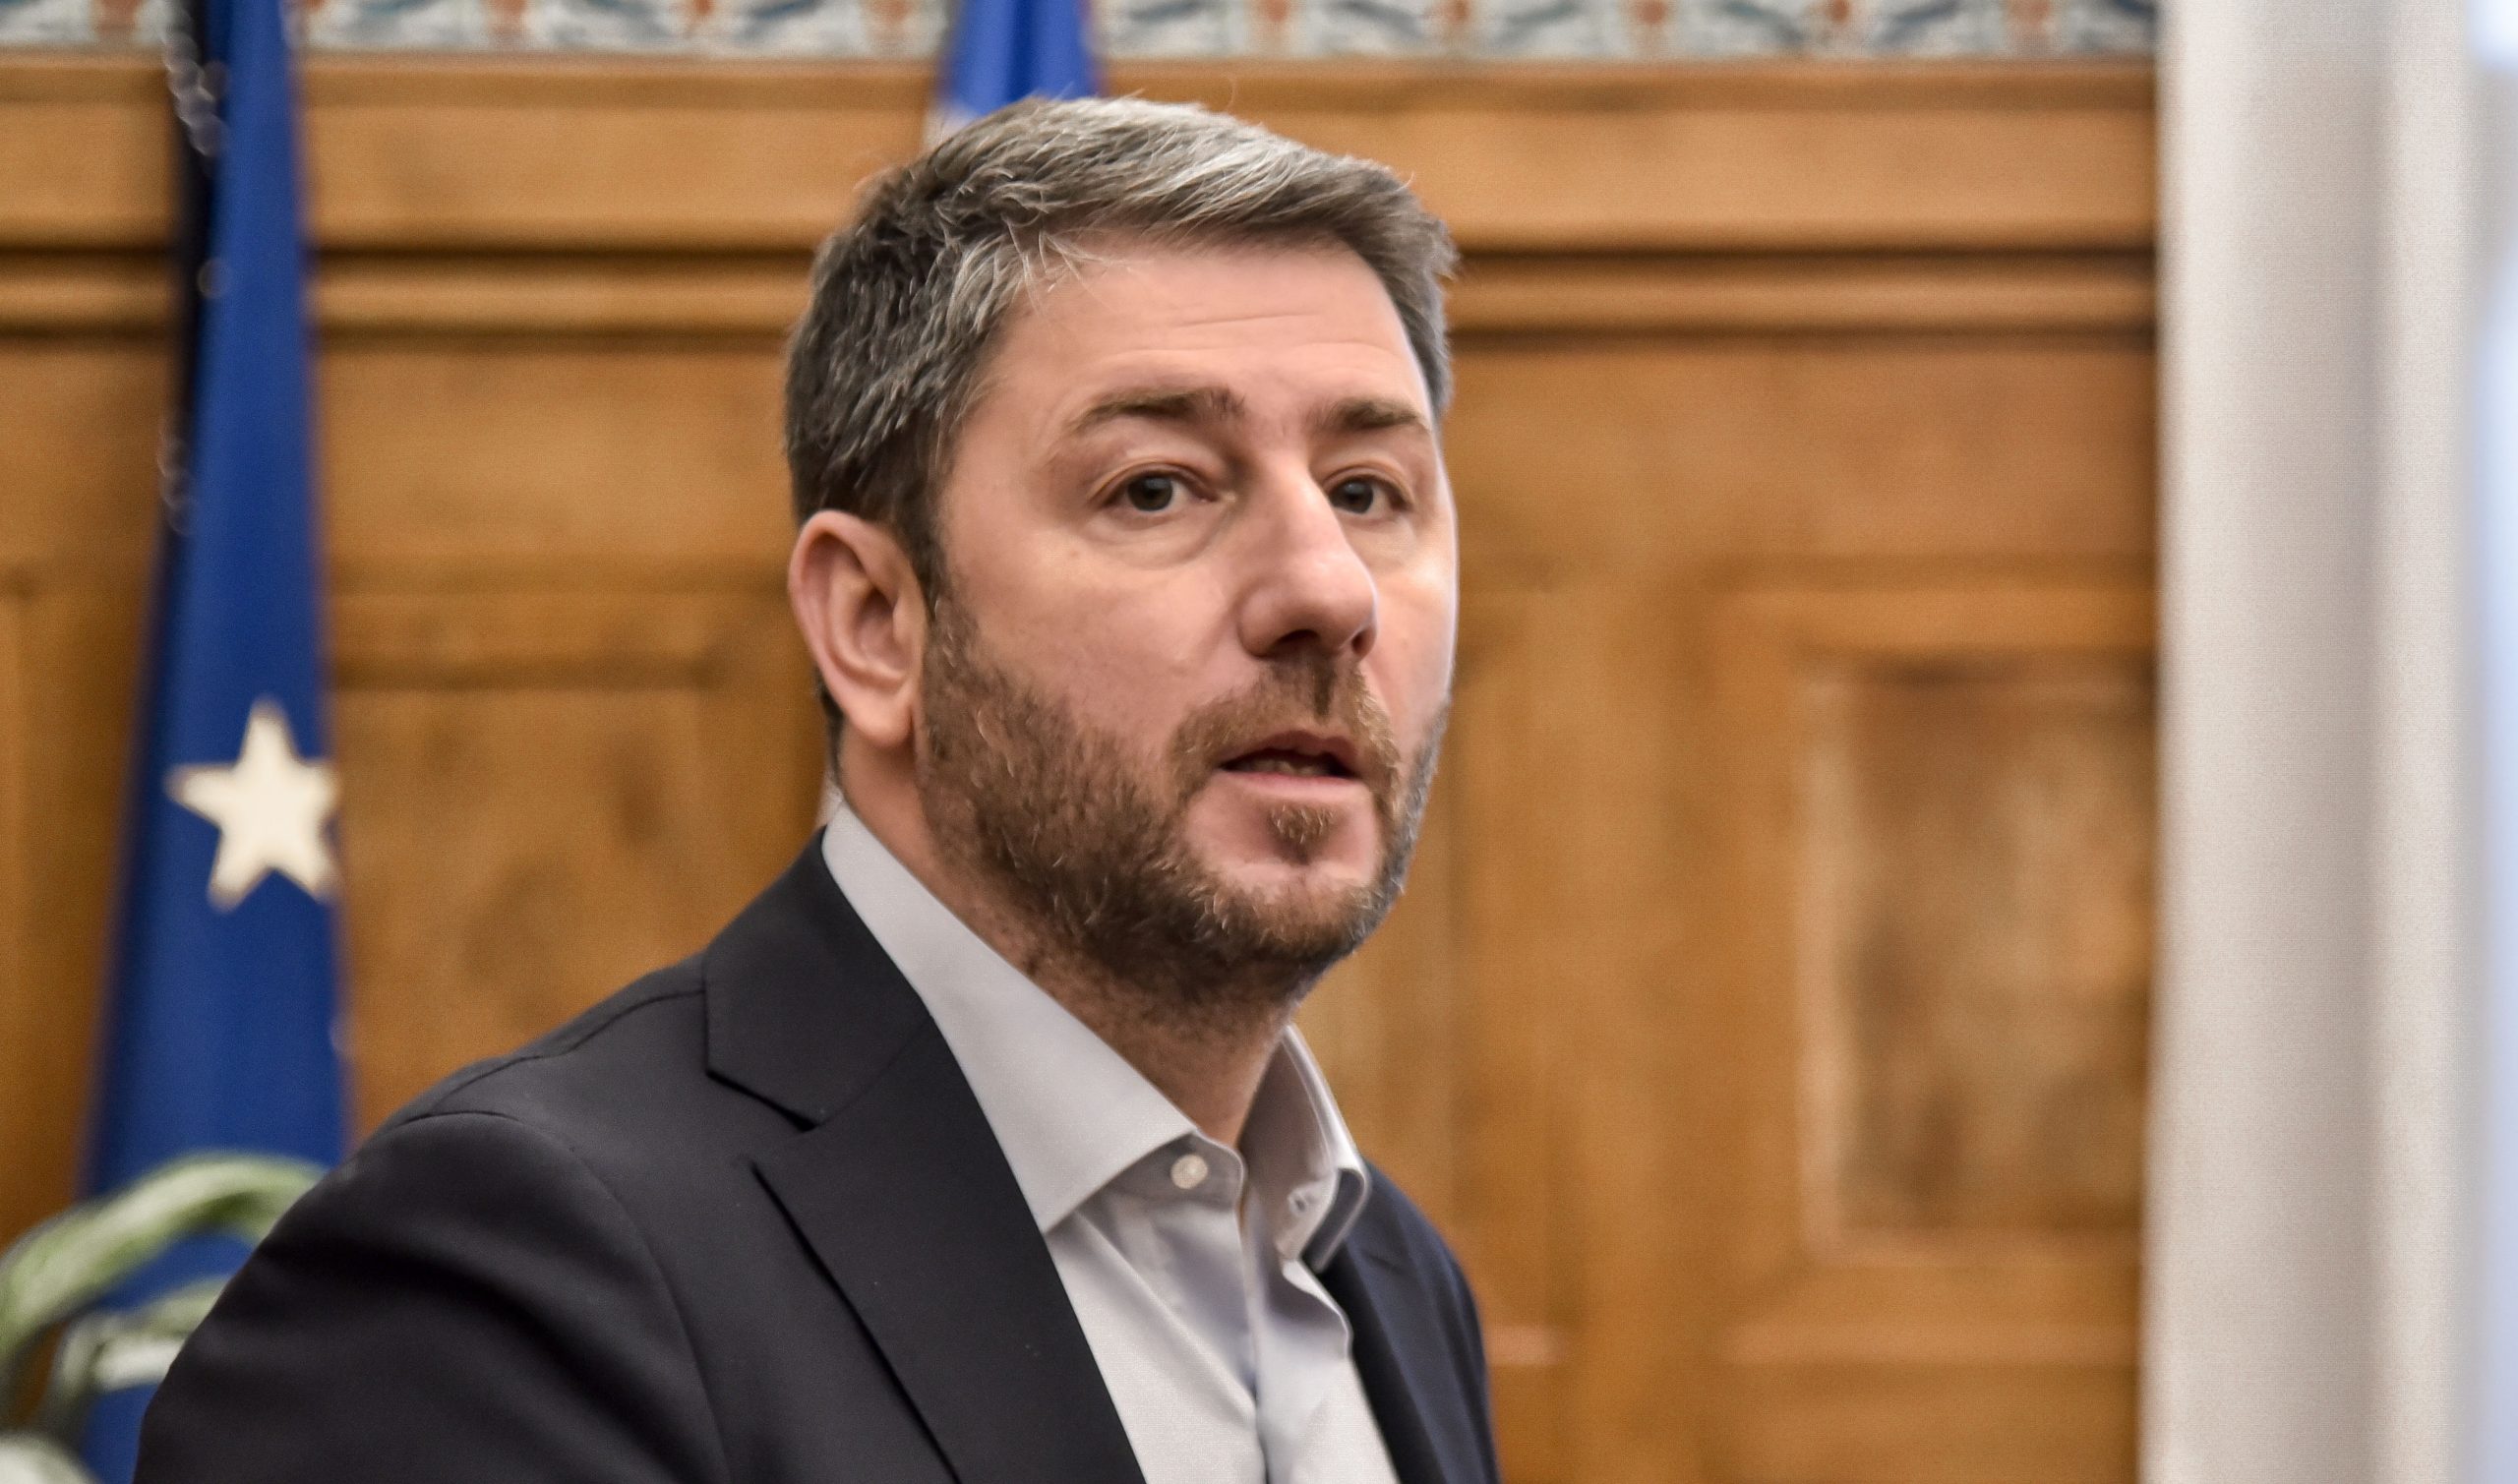 ΠΑΣΟΚ: «Καμία κυβέρνηση συνεργασίας με τη Νέα Δημοκρατία, ούτε στην περίπτωση που έχει 149 έδρες» δηλώνει ο Ανδρουλάκης